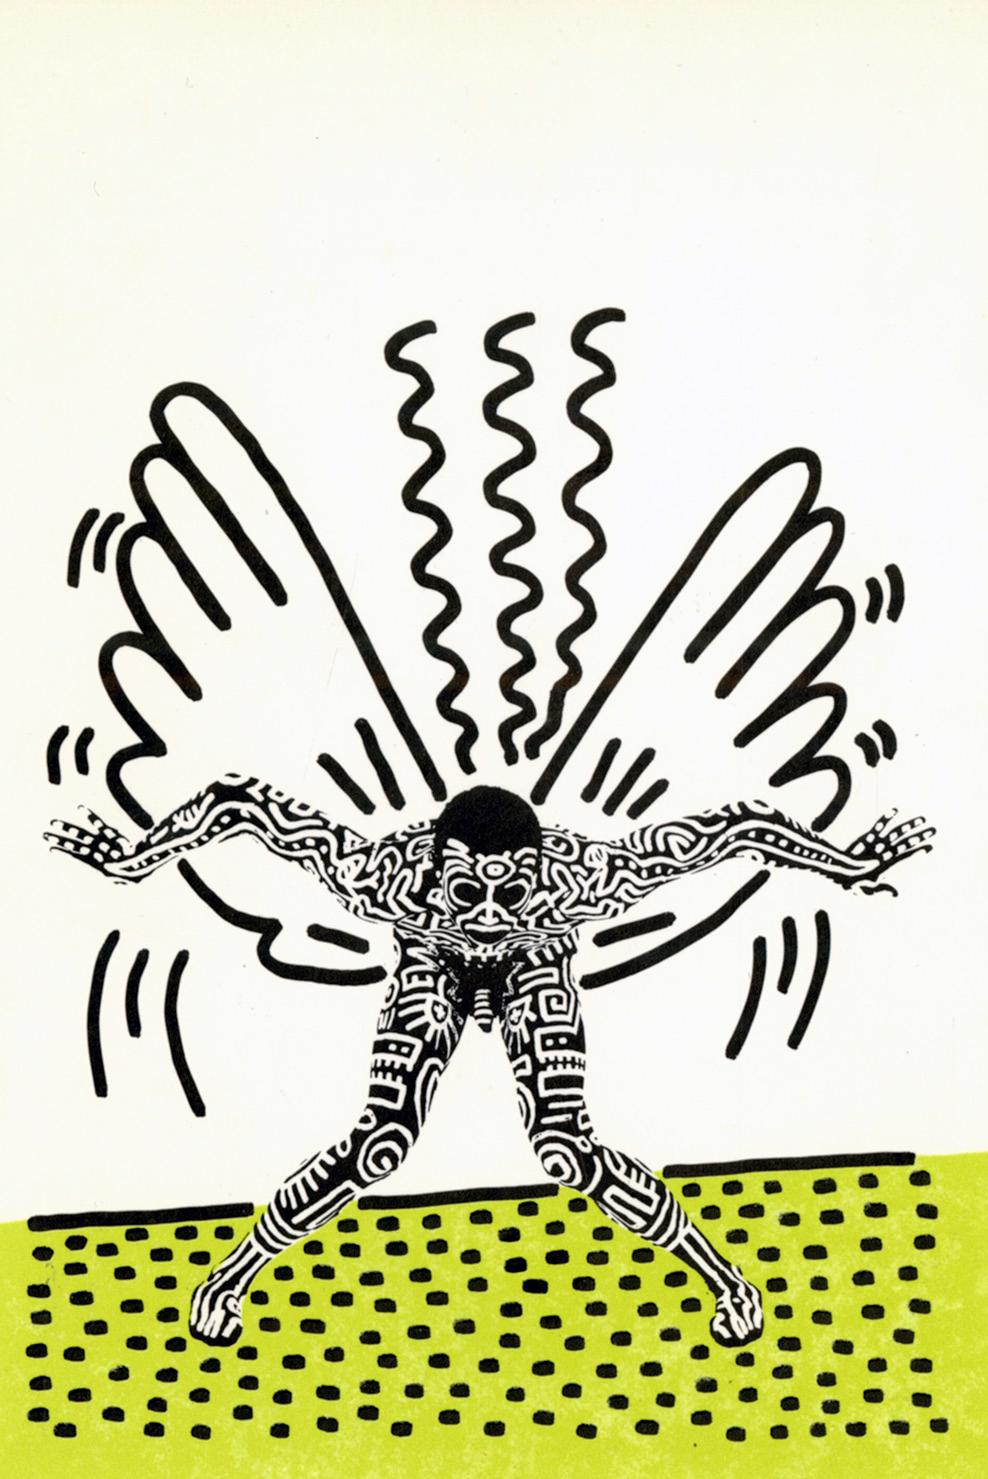 Keith Haring Into 84/Keith Haring Painted Man 1983 : 
Carton d'annonce pour l'exposition bien documentée de Keith Haring, "Into 84", à la Tony Shafrazi Gallery, New York, 1983. Pour cette série, Haring a emprunté le corps de Bill AT&T Jones - de la